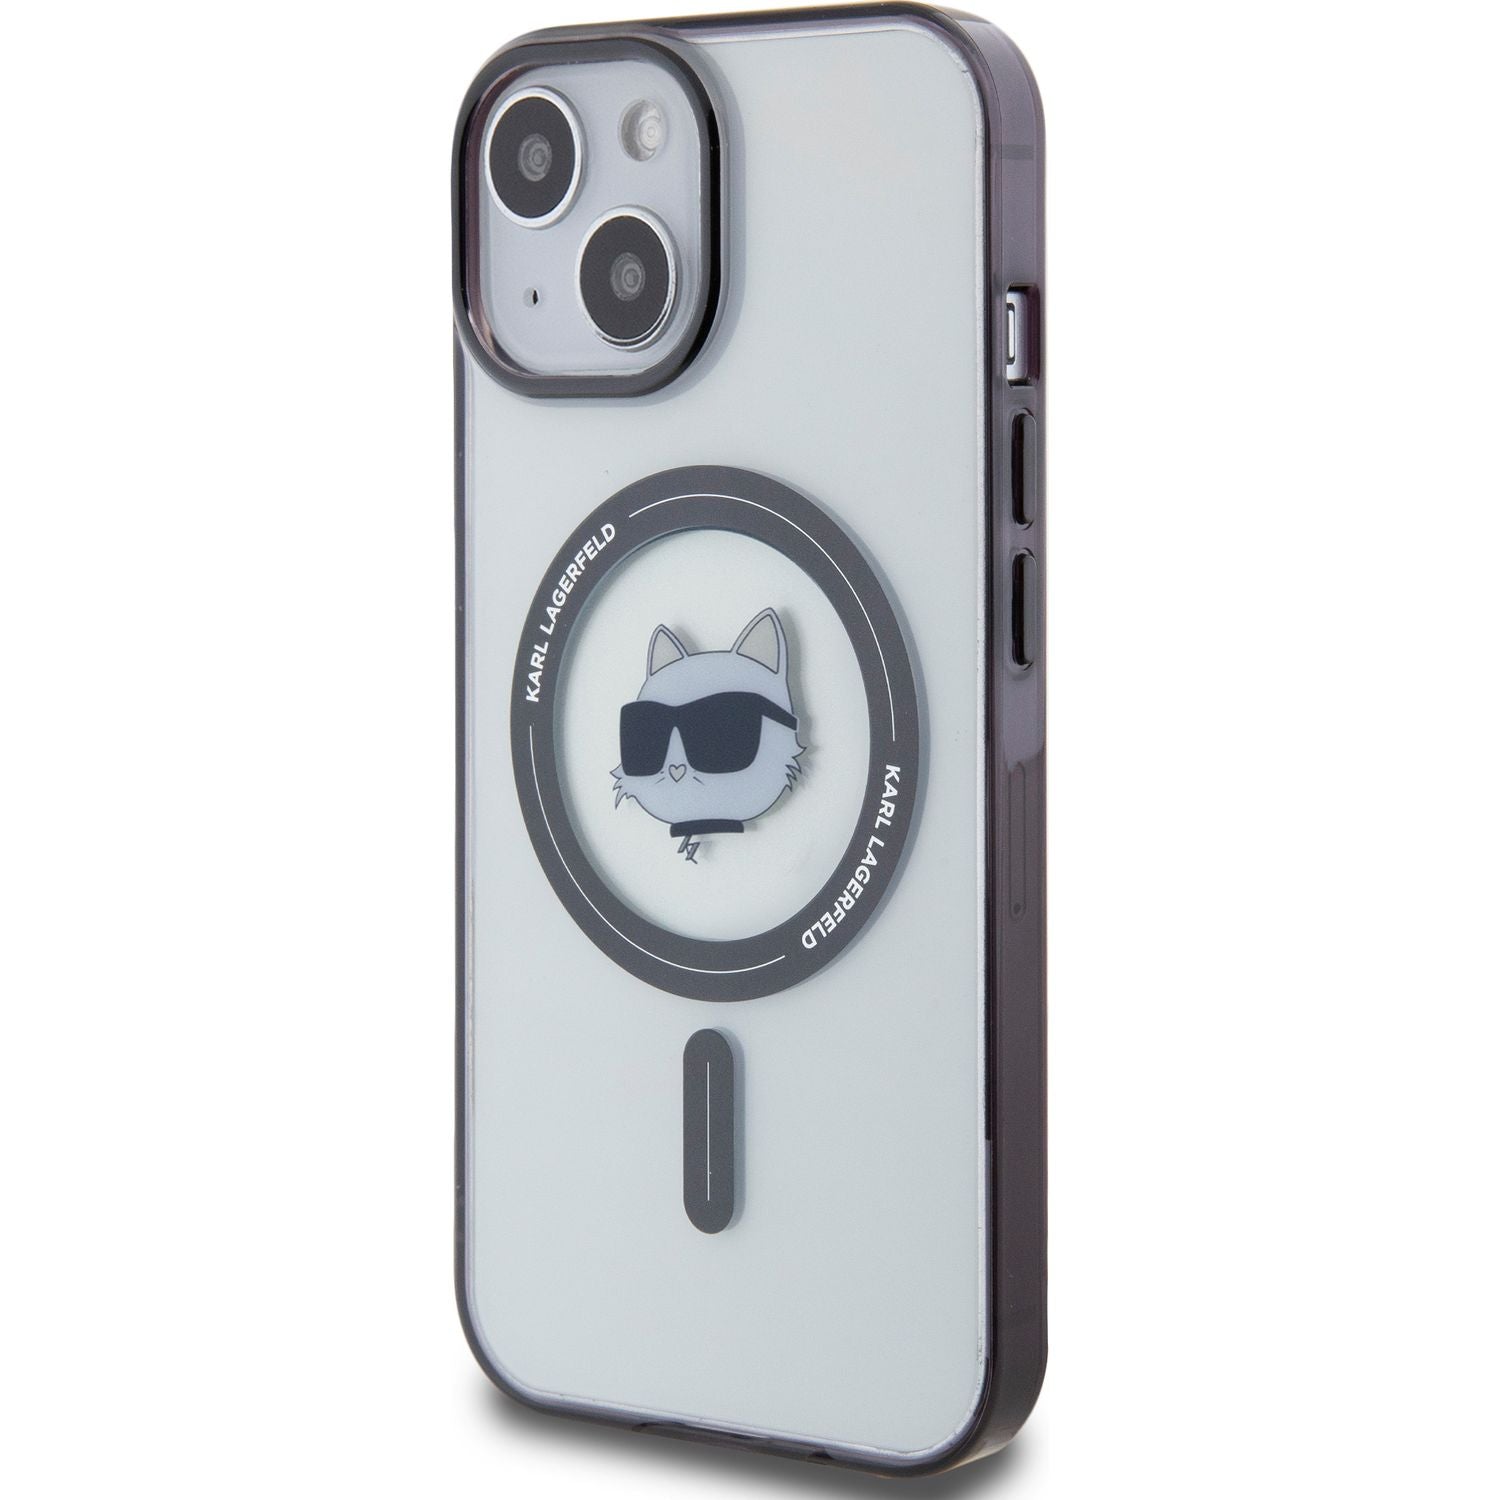 Schutzhülle Karl Lagerfeld HardCase IML Choupette MagSafe für iPhone 15 Plus, Transparent